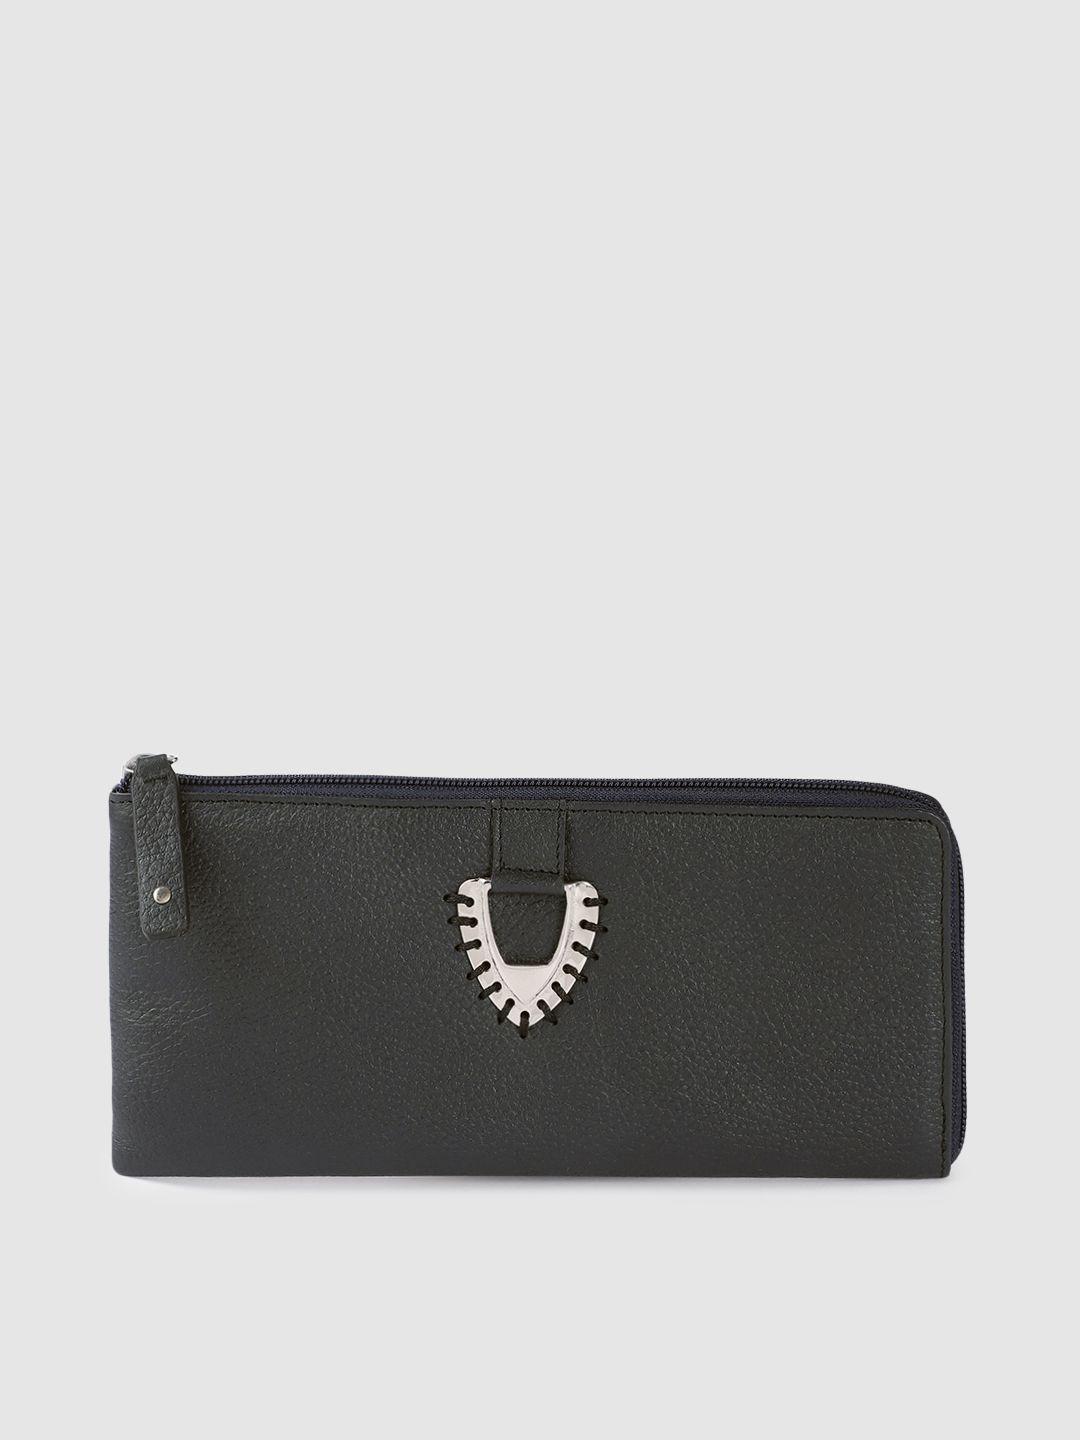 hidesign women navy blue leather zip around wallet